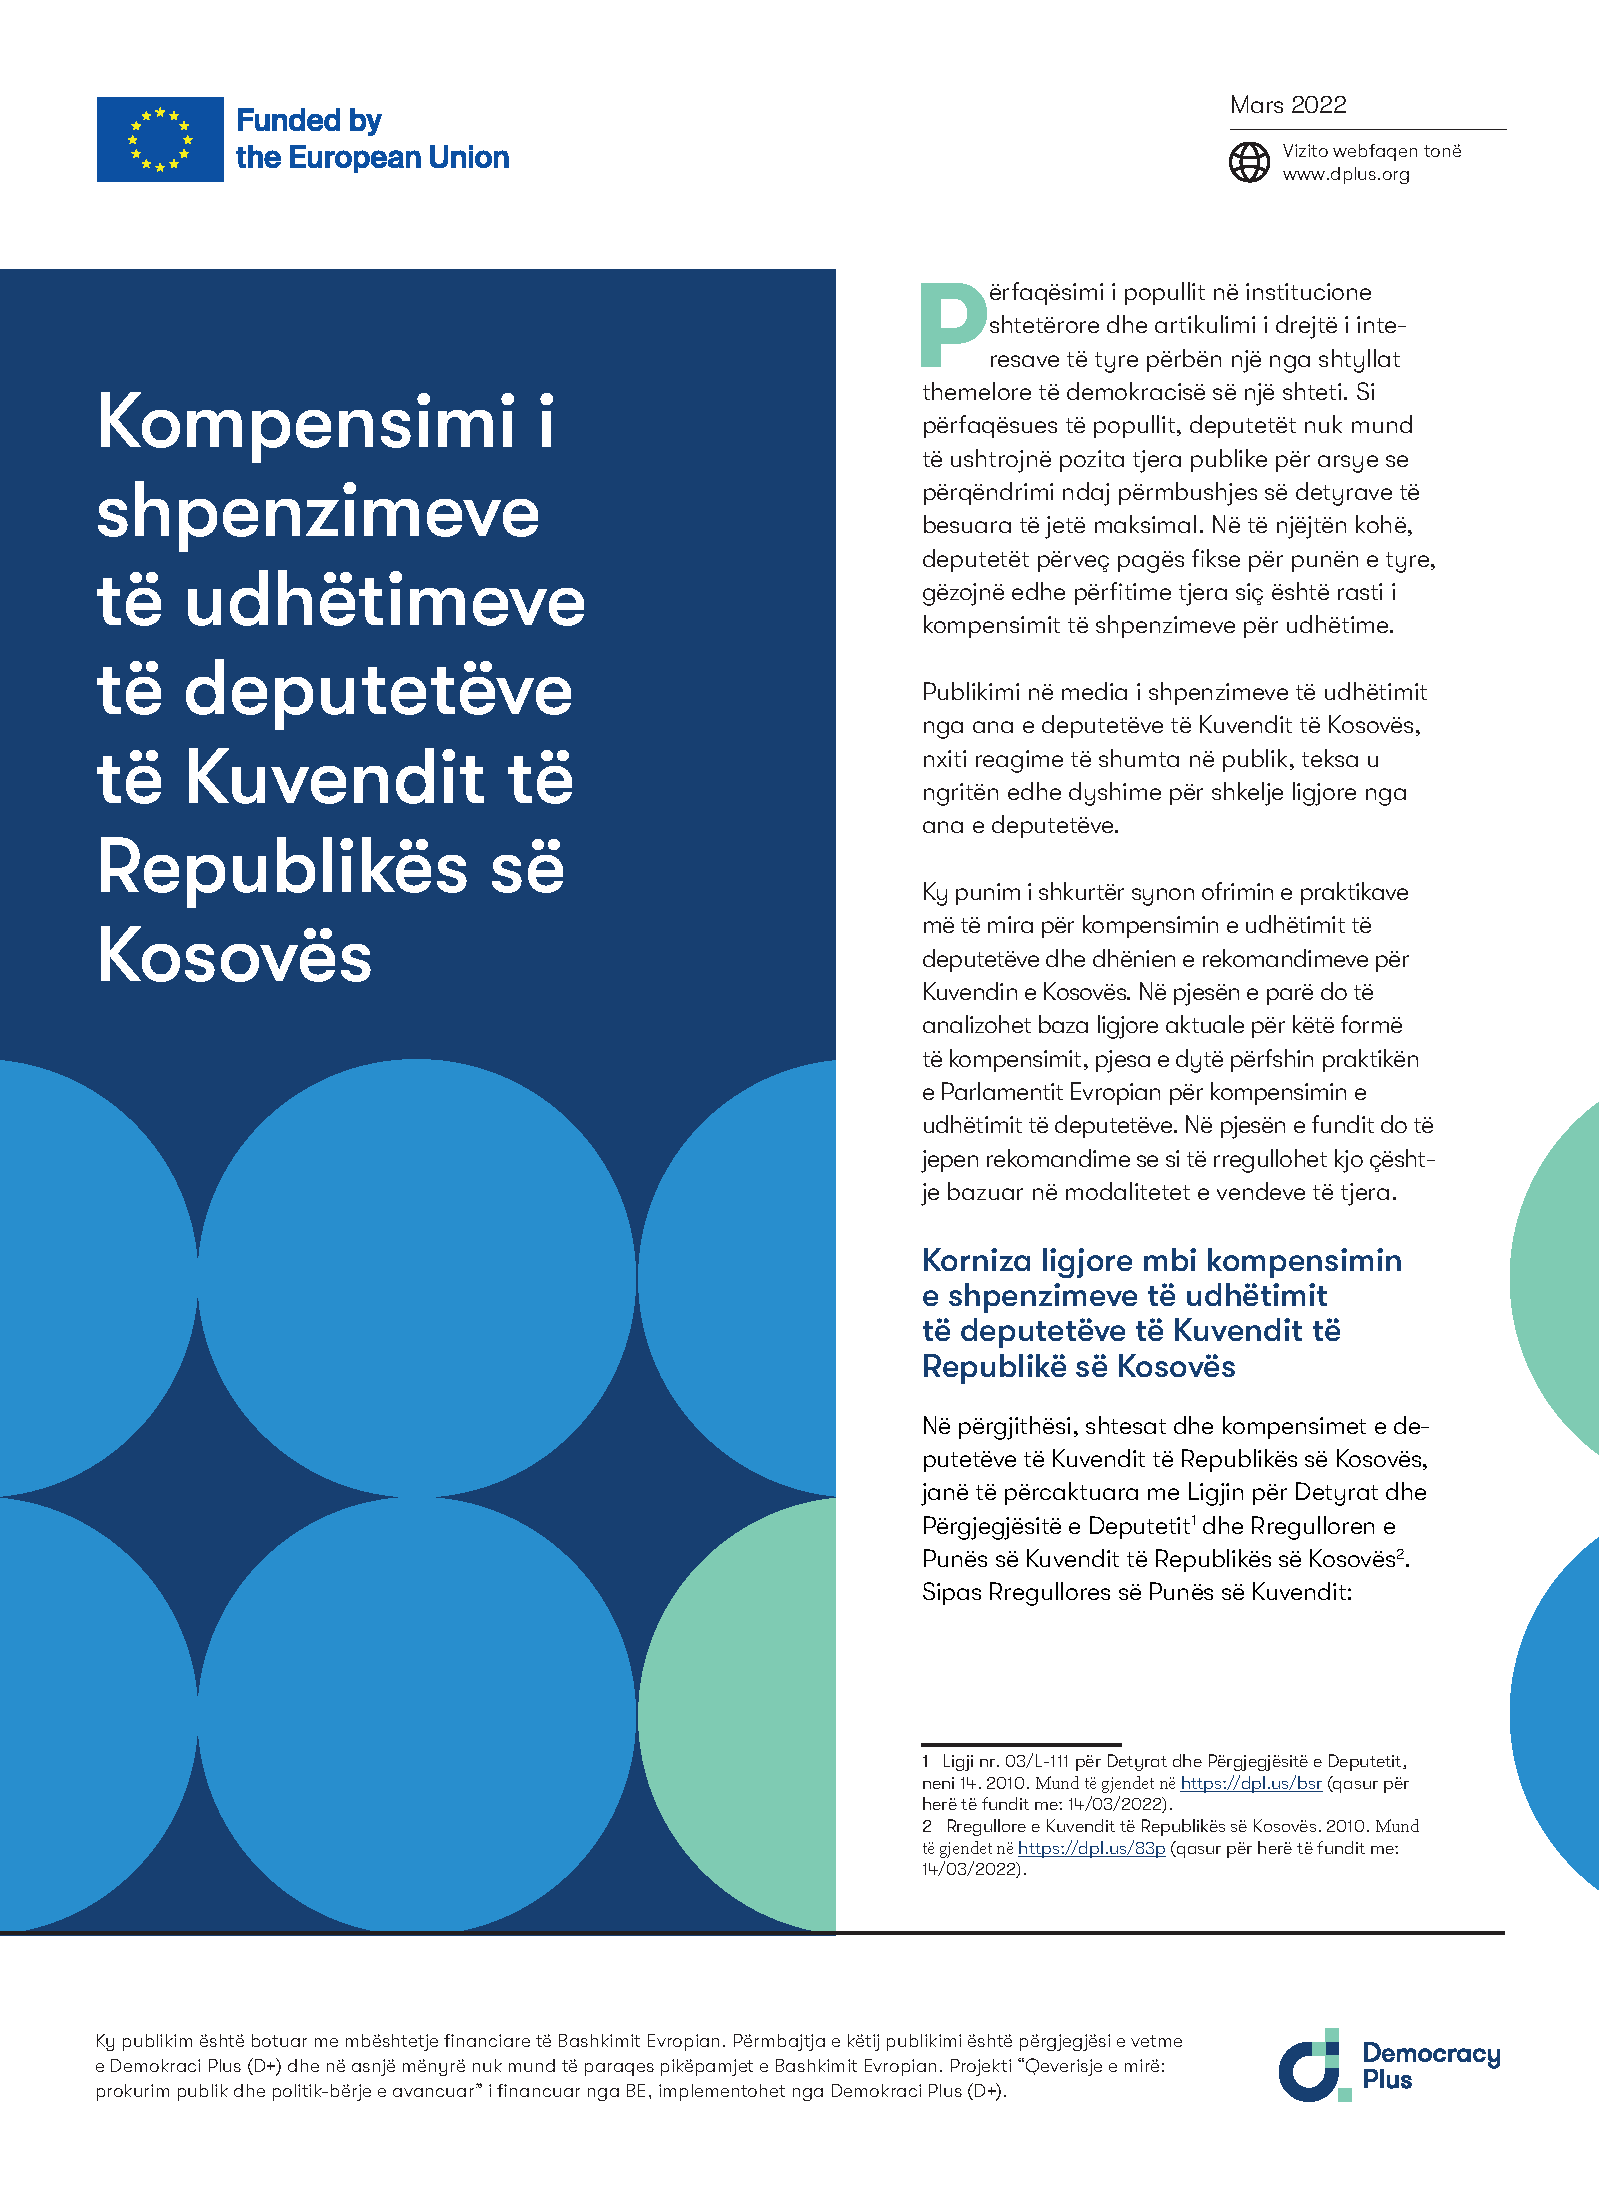 Kompensimi i shpenzimeve të udhëtimeve të deputetëve të Kuvendit të Republikës së Kosovës